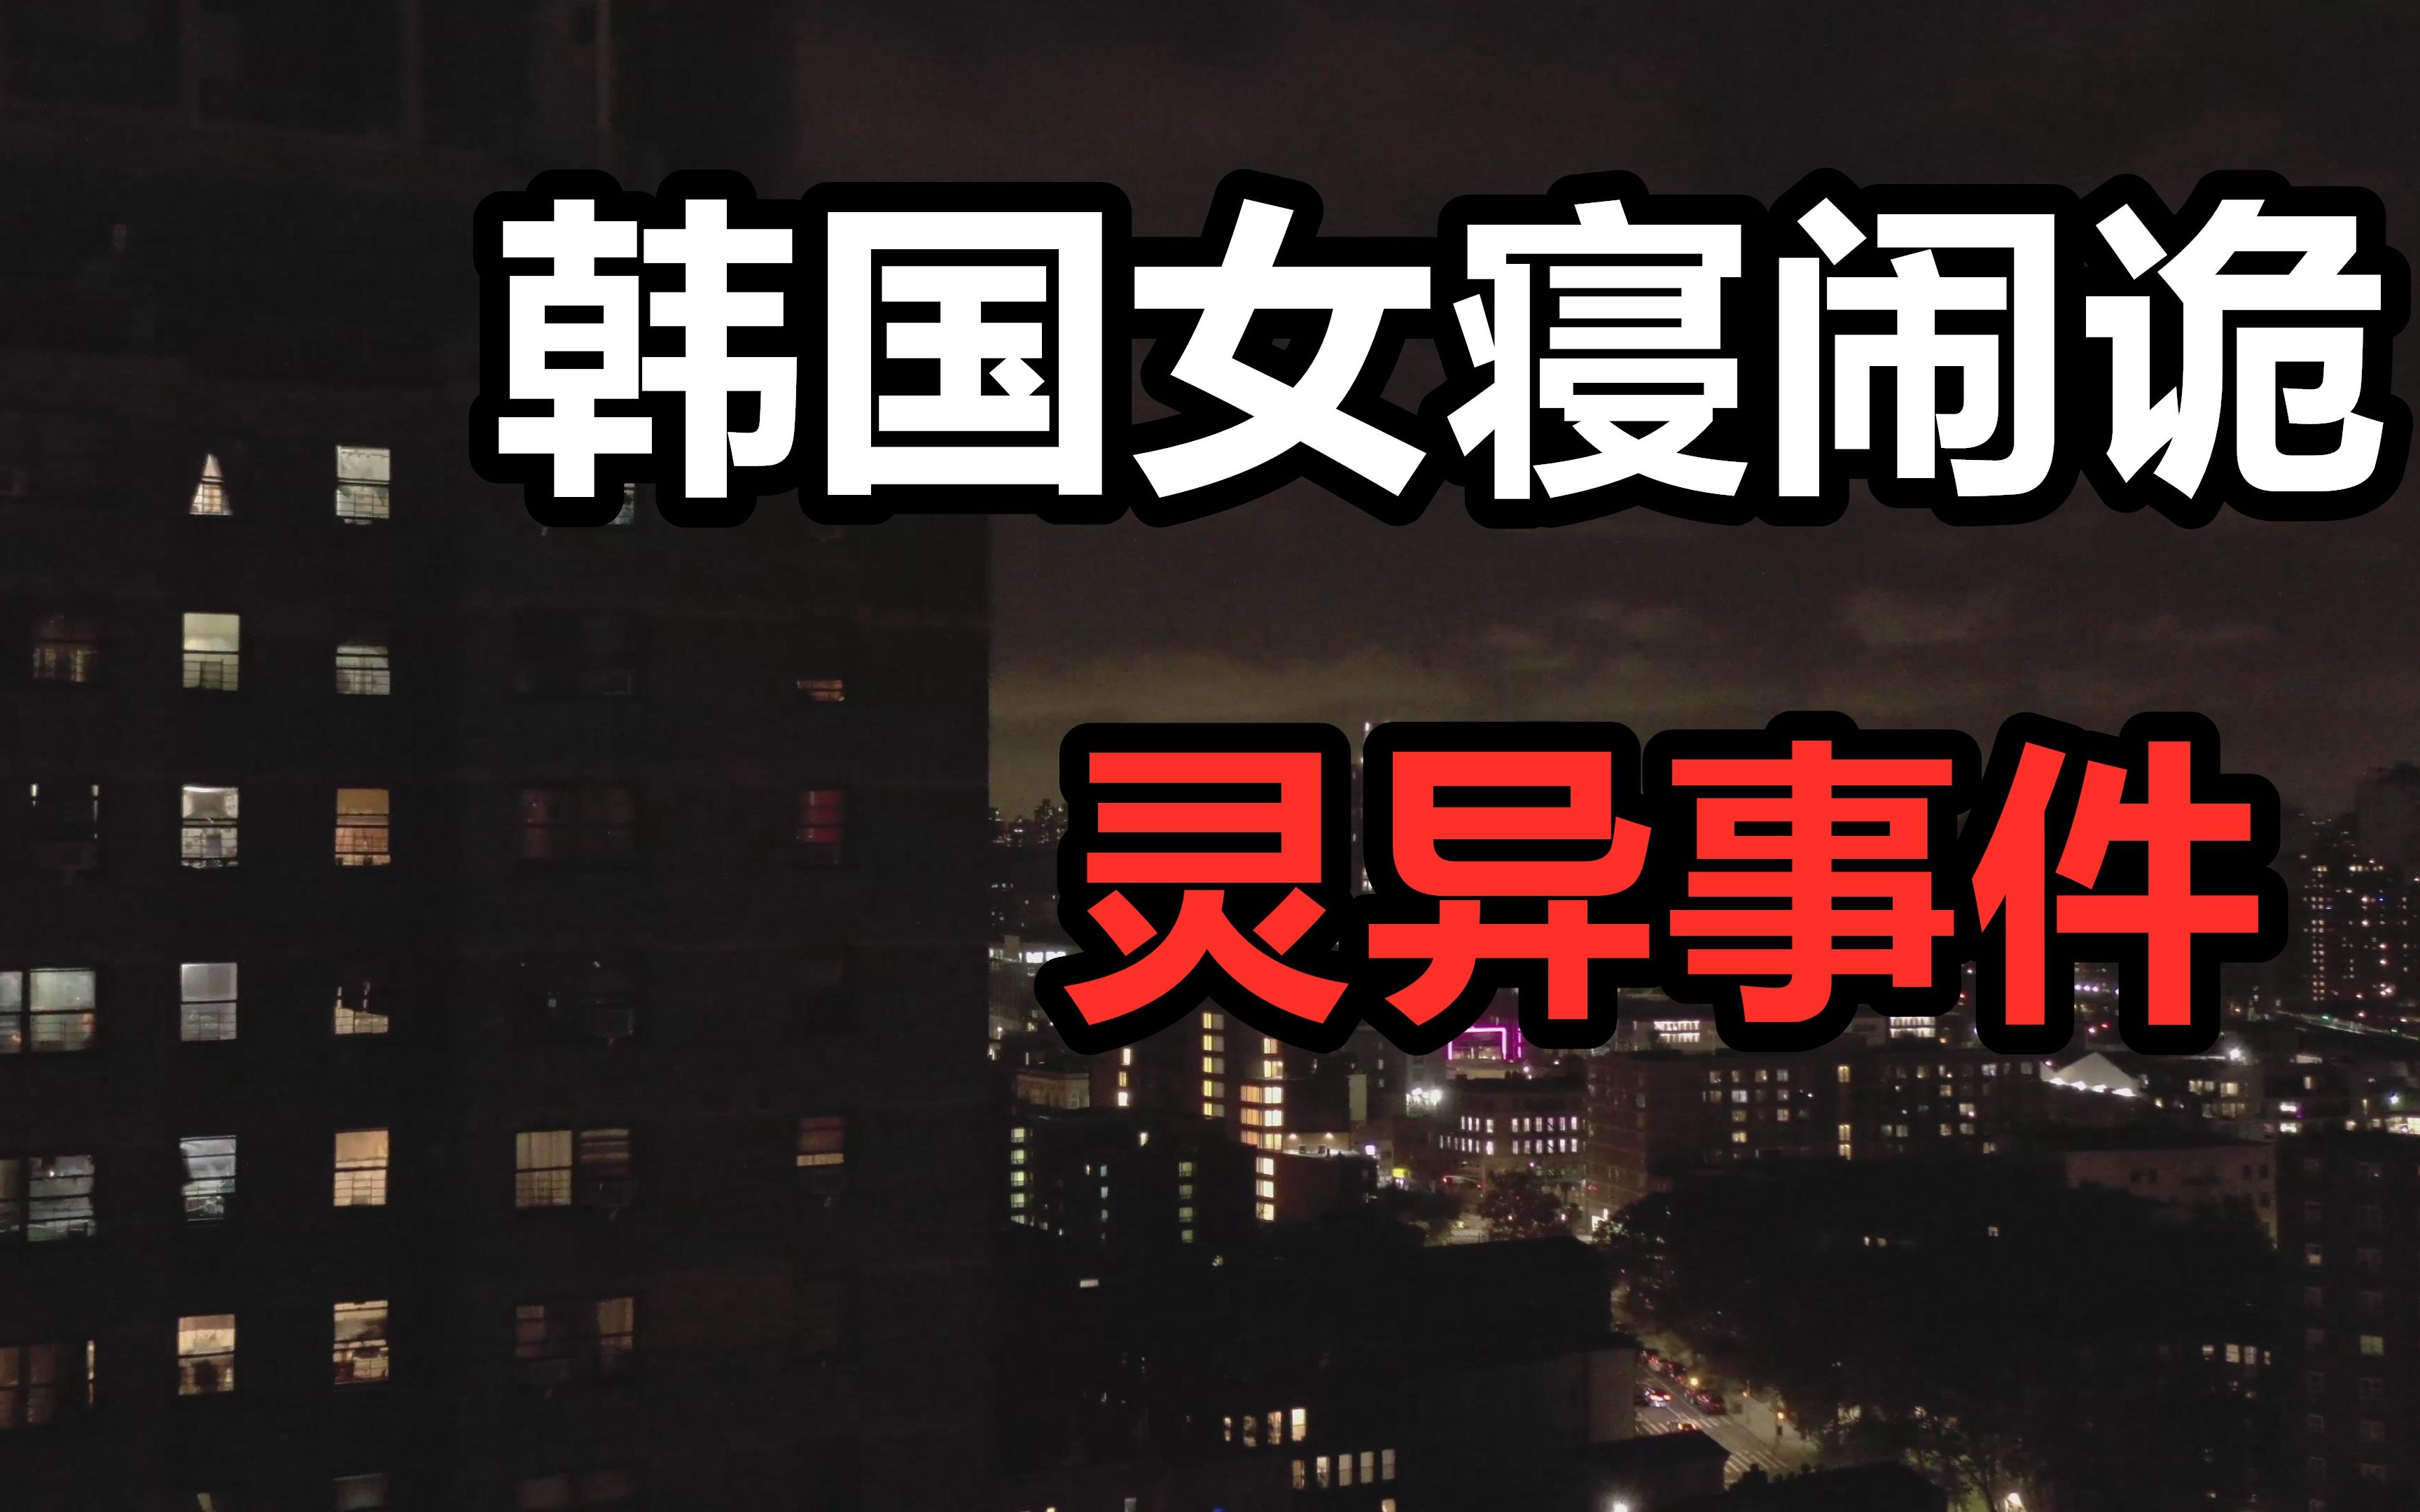 灵异故事合集丨“半夜搬来的鬼邻居”-on9刘-on9刘-哔哩哔哩视频